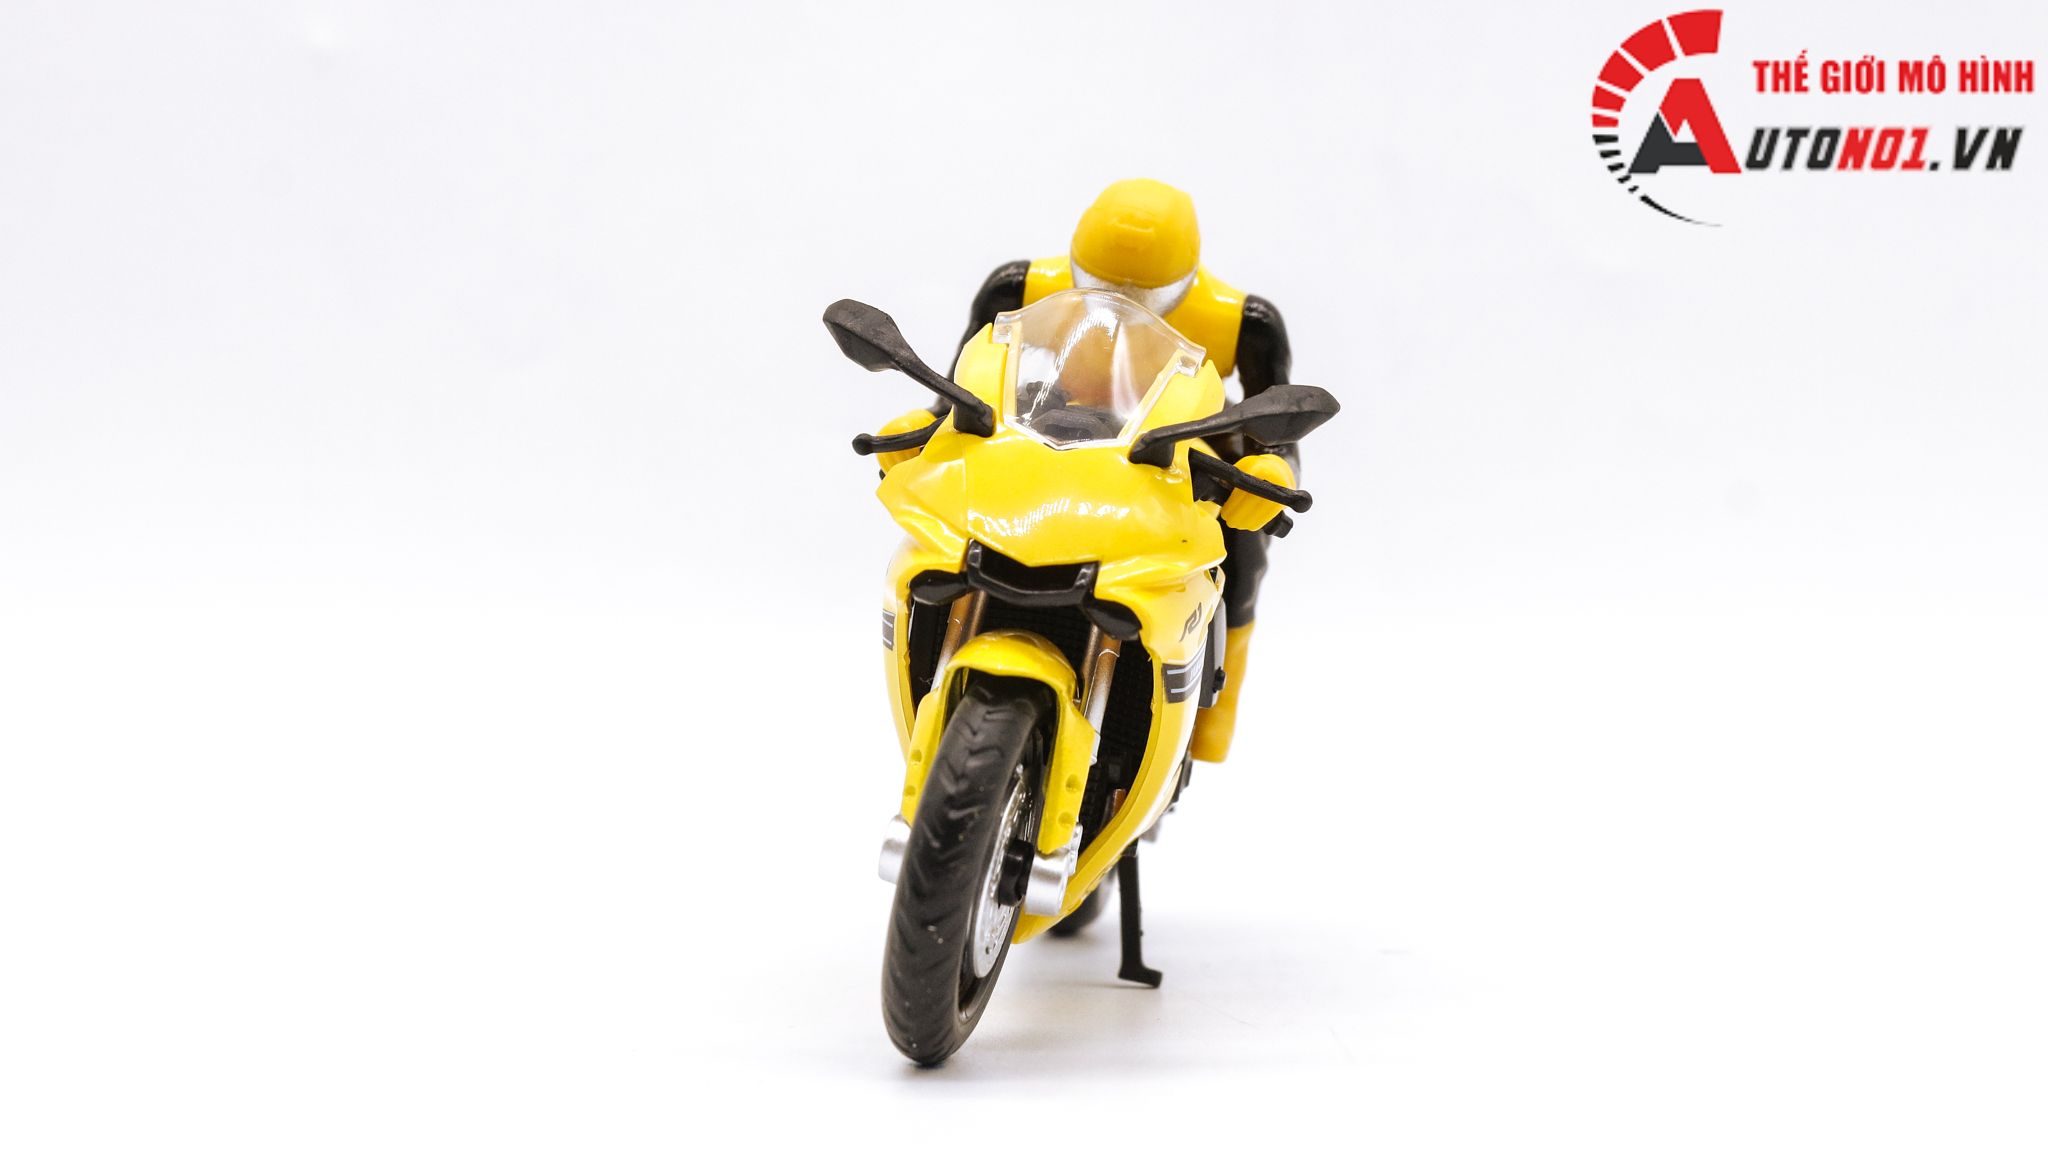  Mô hình xe Yamaha Yzf- r1 yellow và figure 1:18 MSZ 7852 